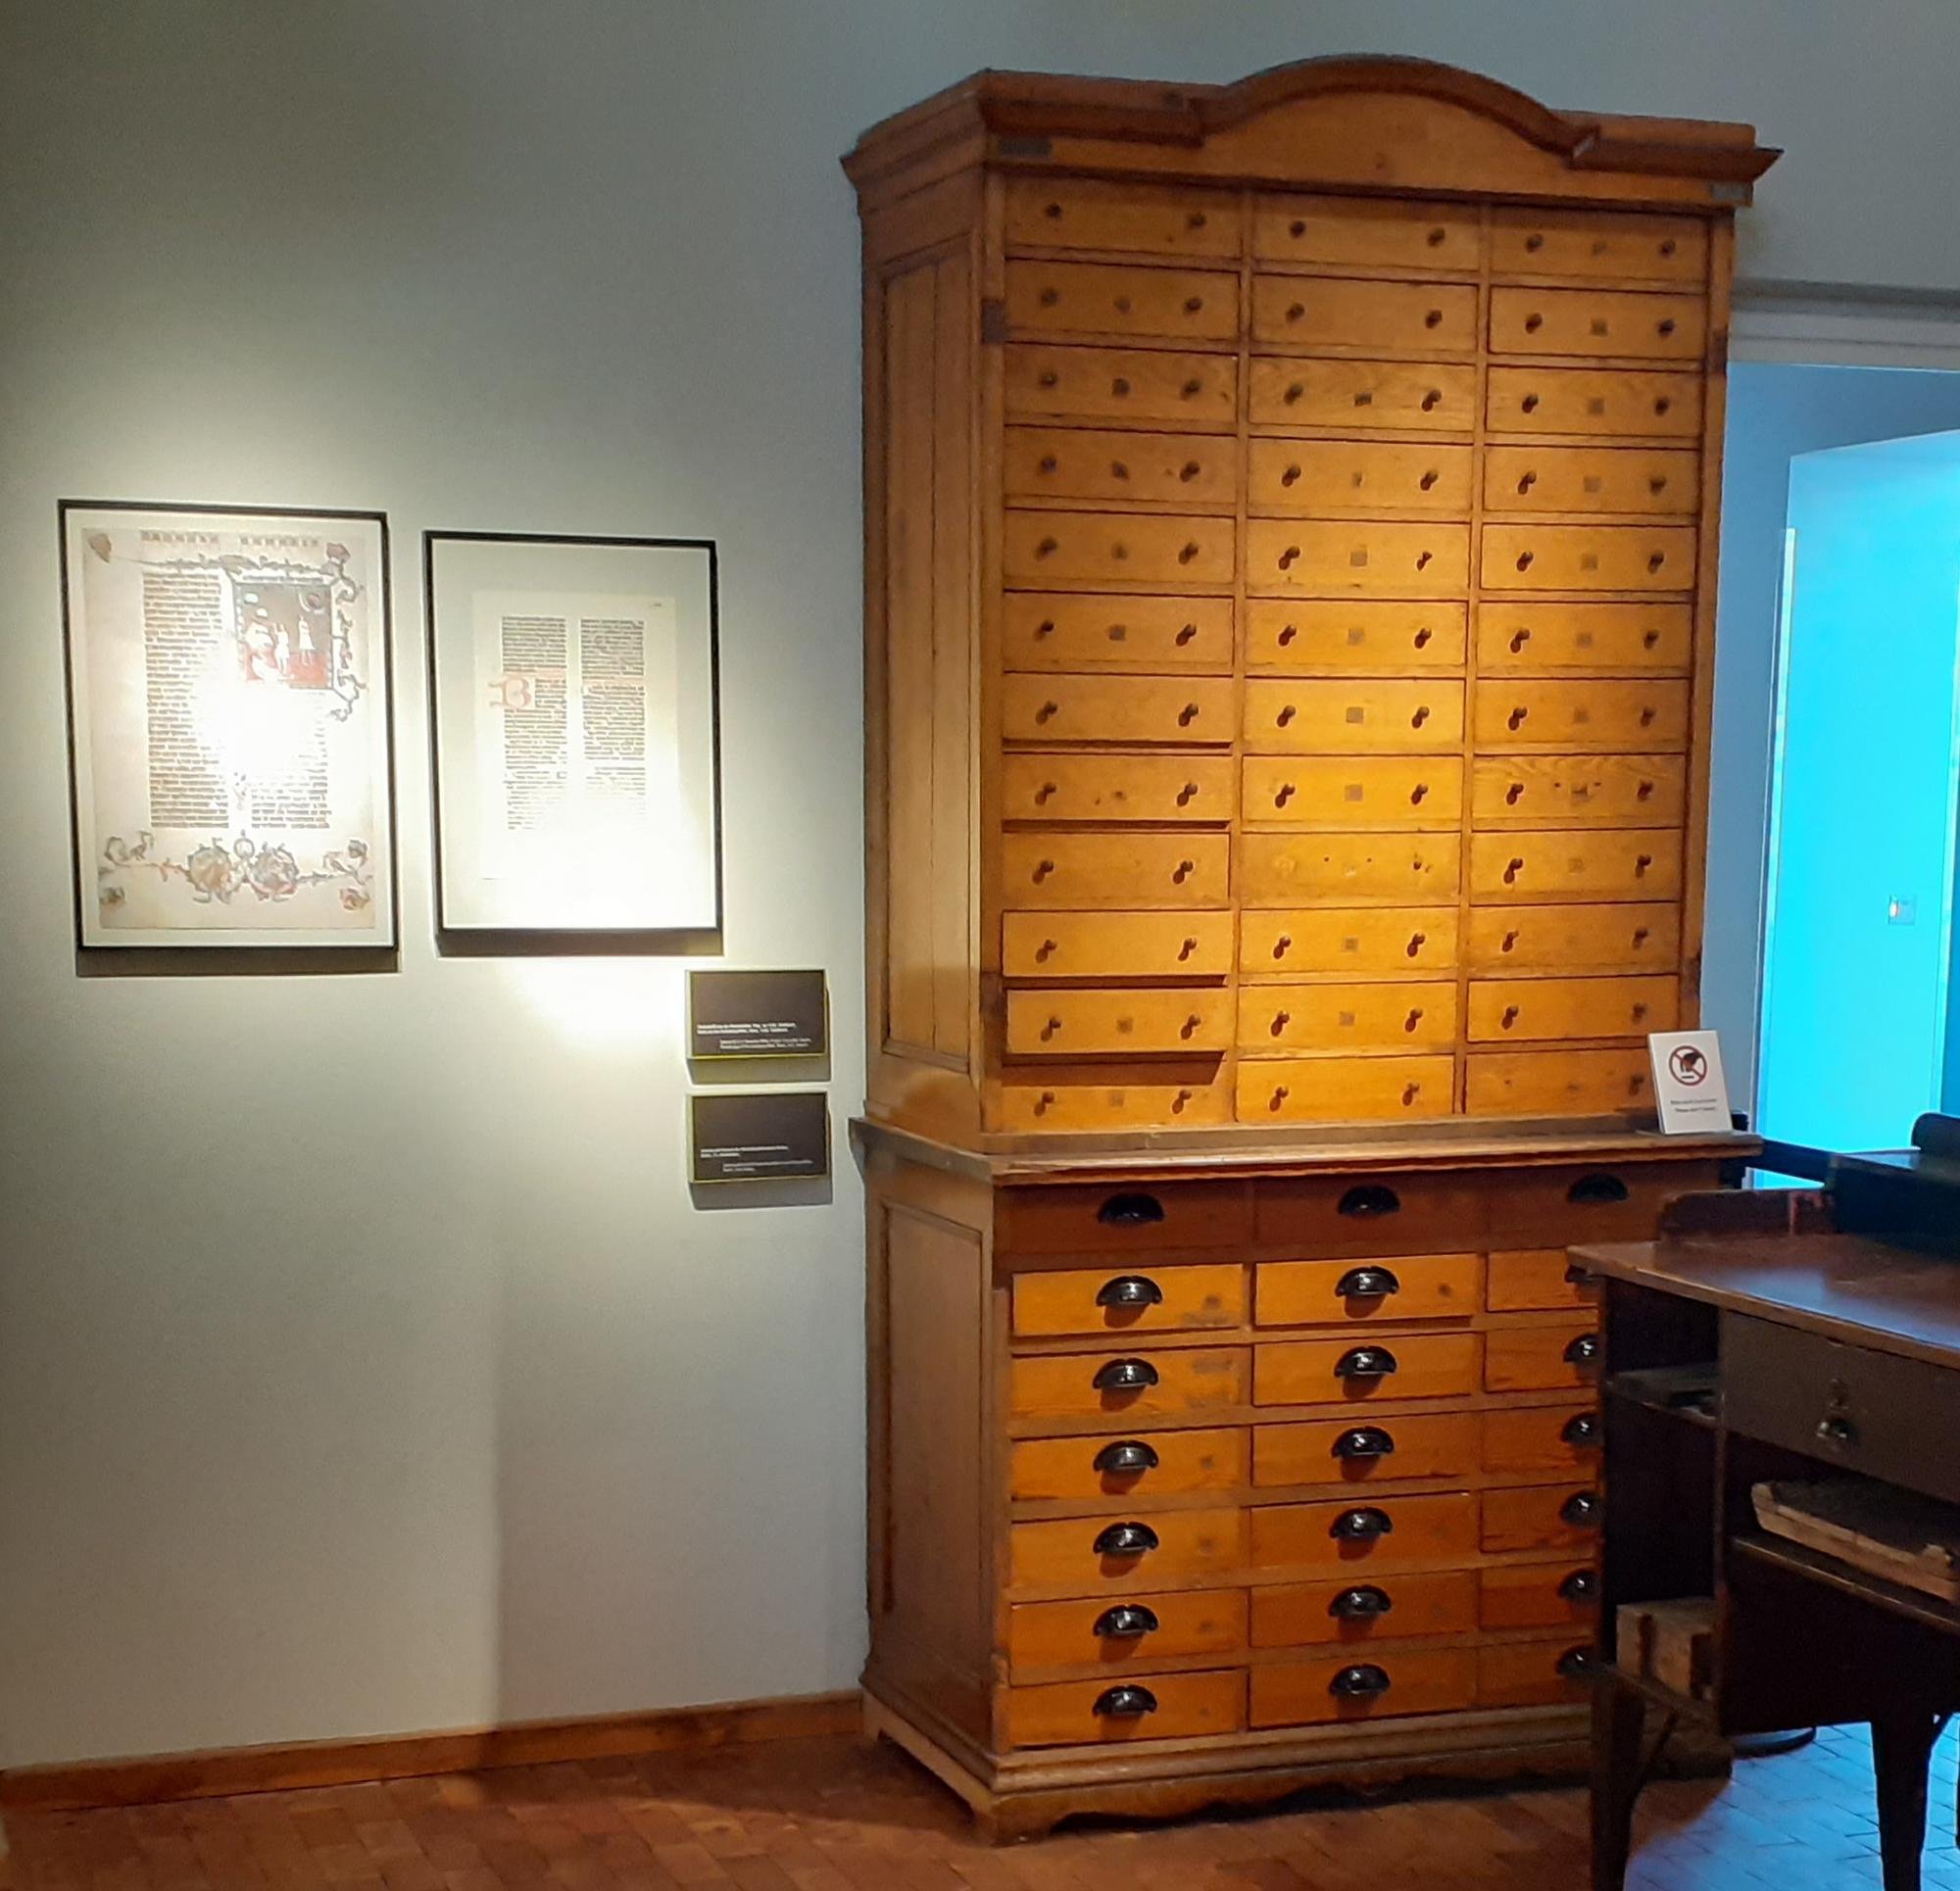 Holzschrank mit Patrizen, Stempeln, aus der Reichsdruckerei, mit insgesamt 57 Schubladen (Stiftung Deutsches Technikmuseum Berlin CC0)